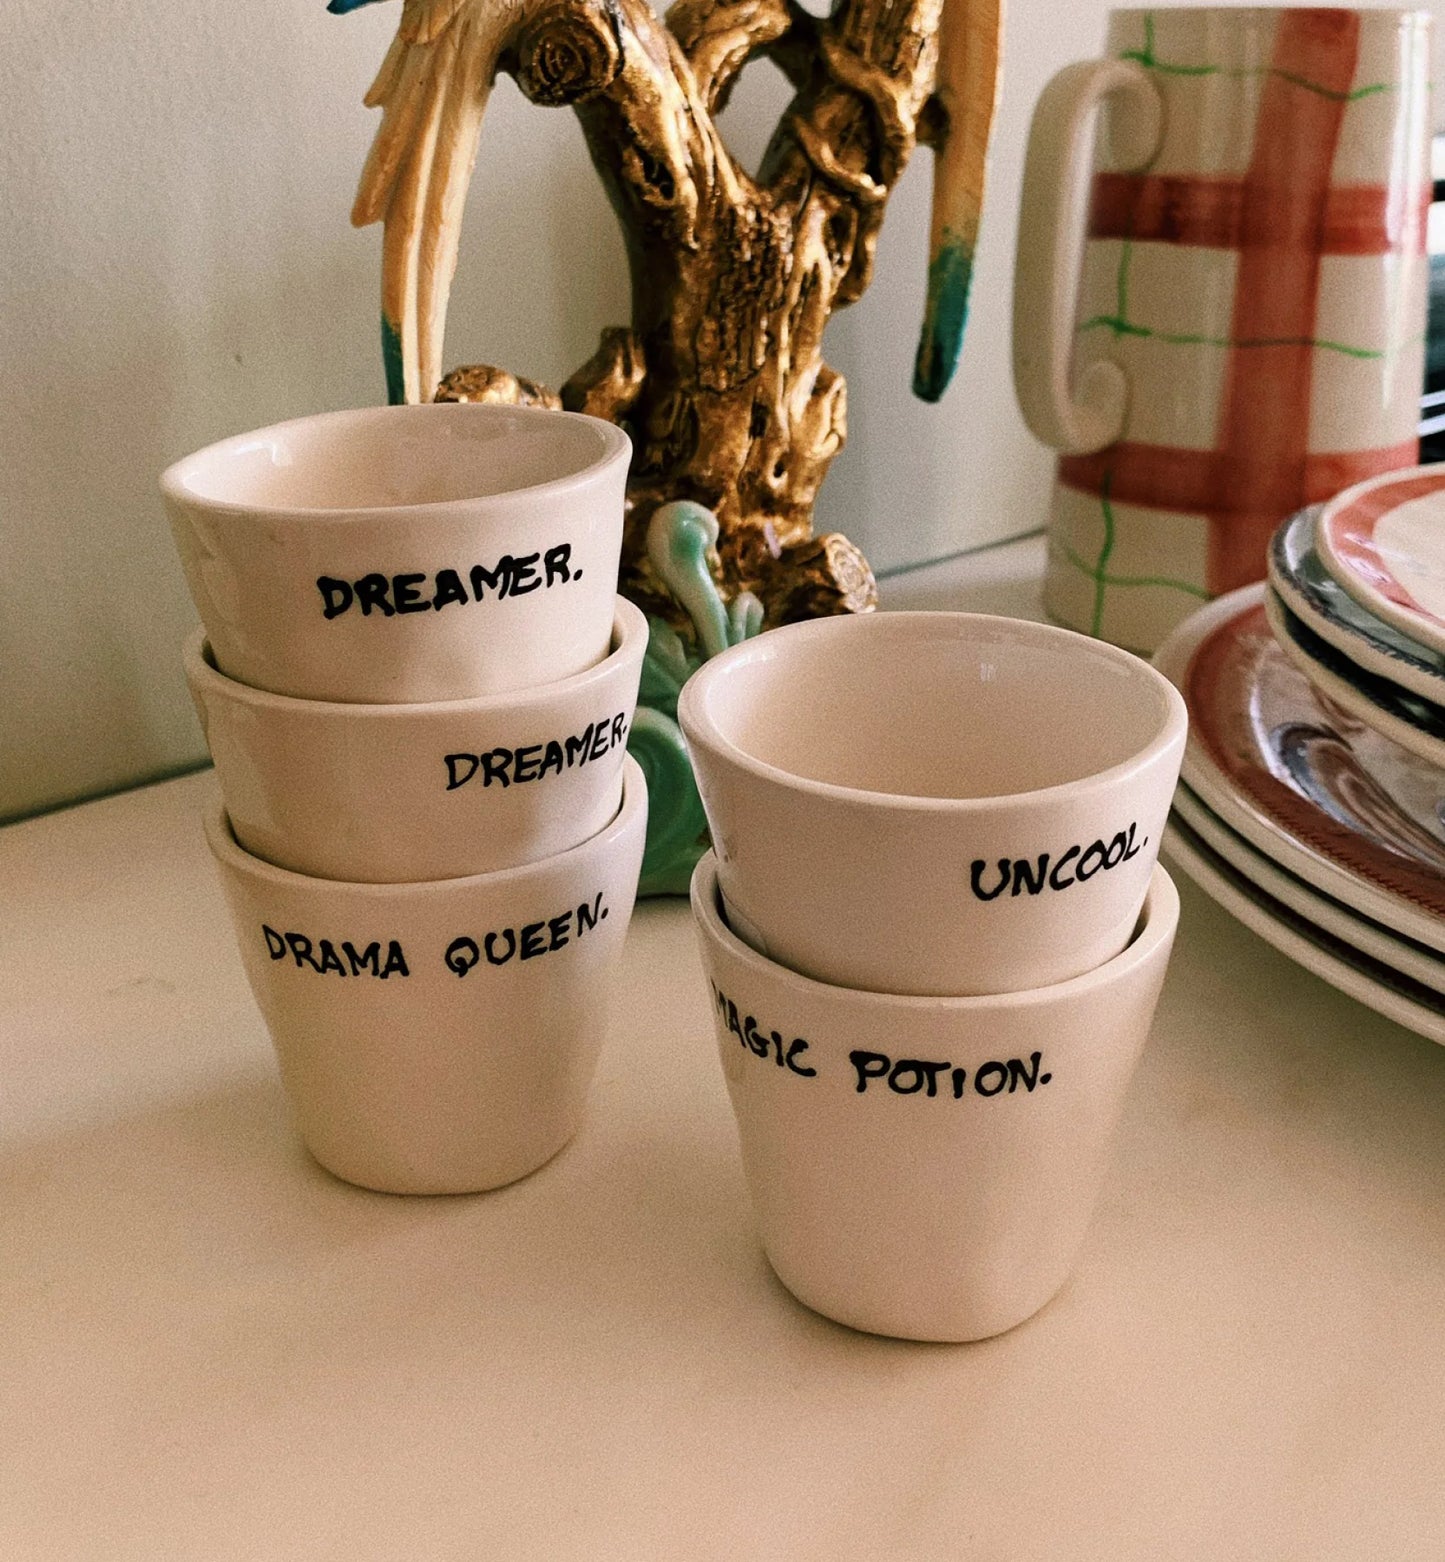 Espresso Cup Dreamer